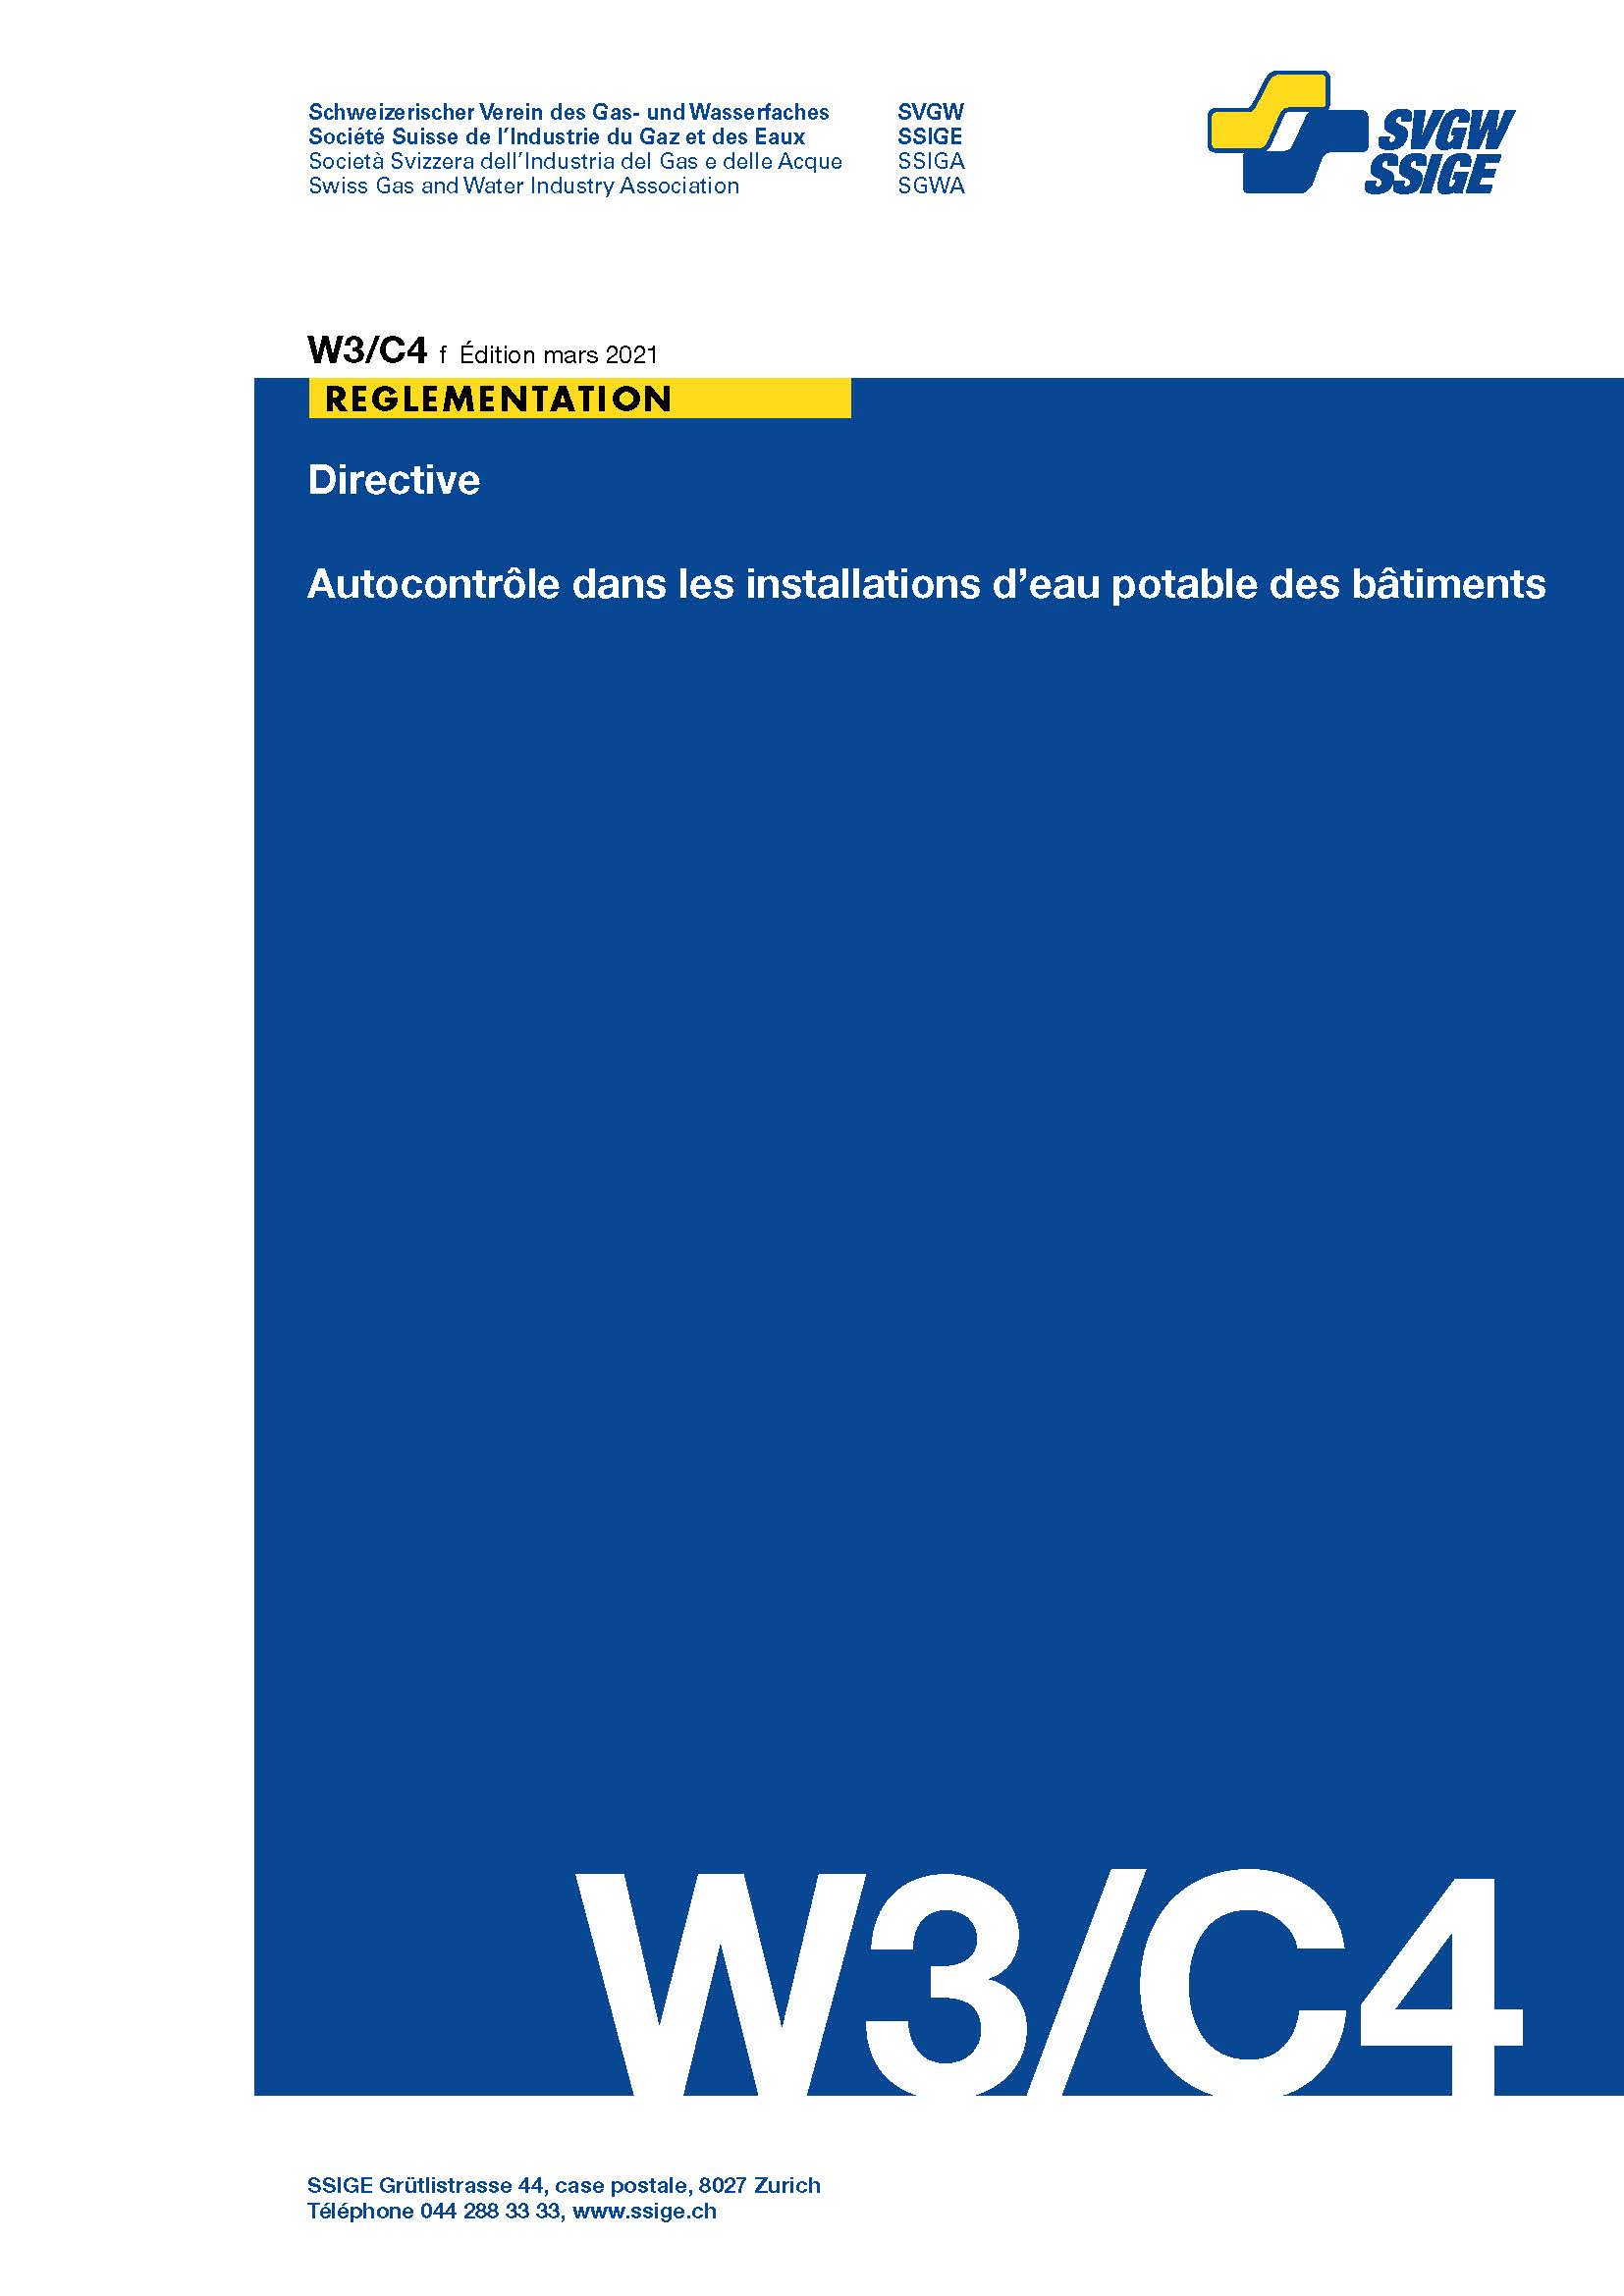 W3/C4 f Directive; Autocontrôle dans les installations d'eau potable des bâtiments